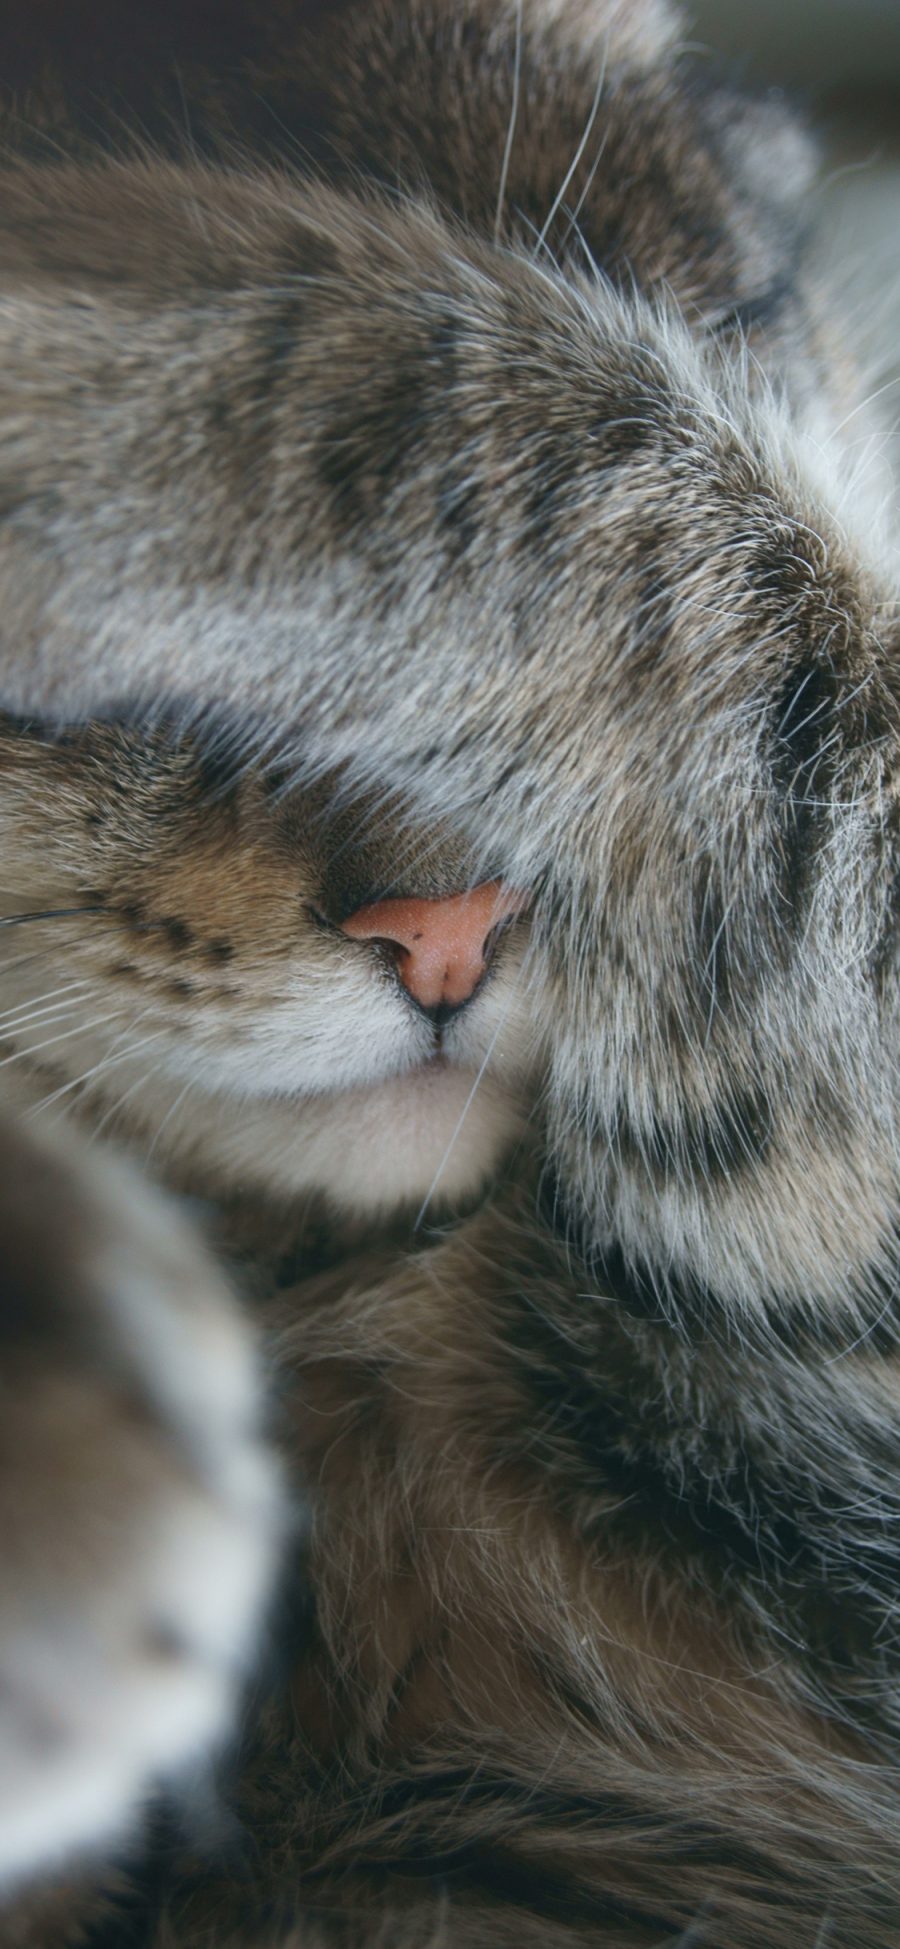 [2436×1125]猫咪 可爱 捂脸 爪子 喵星人 萌 宠物 苹果手机壁纸图片